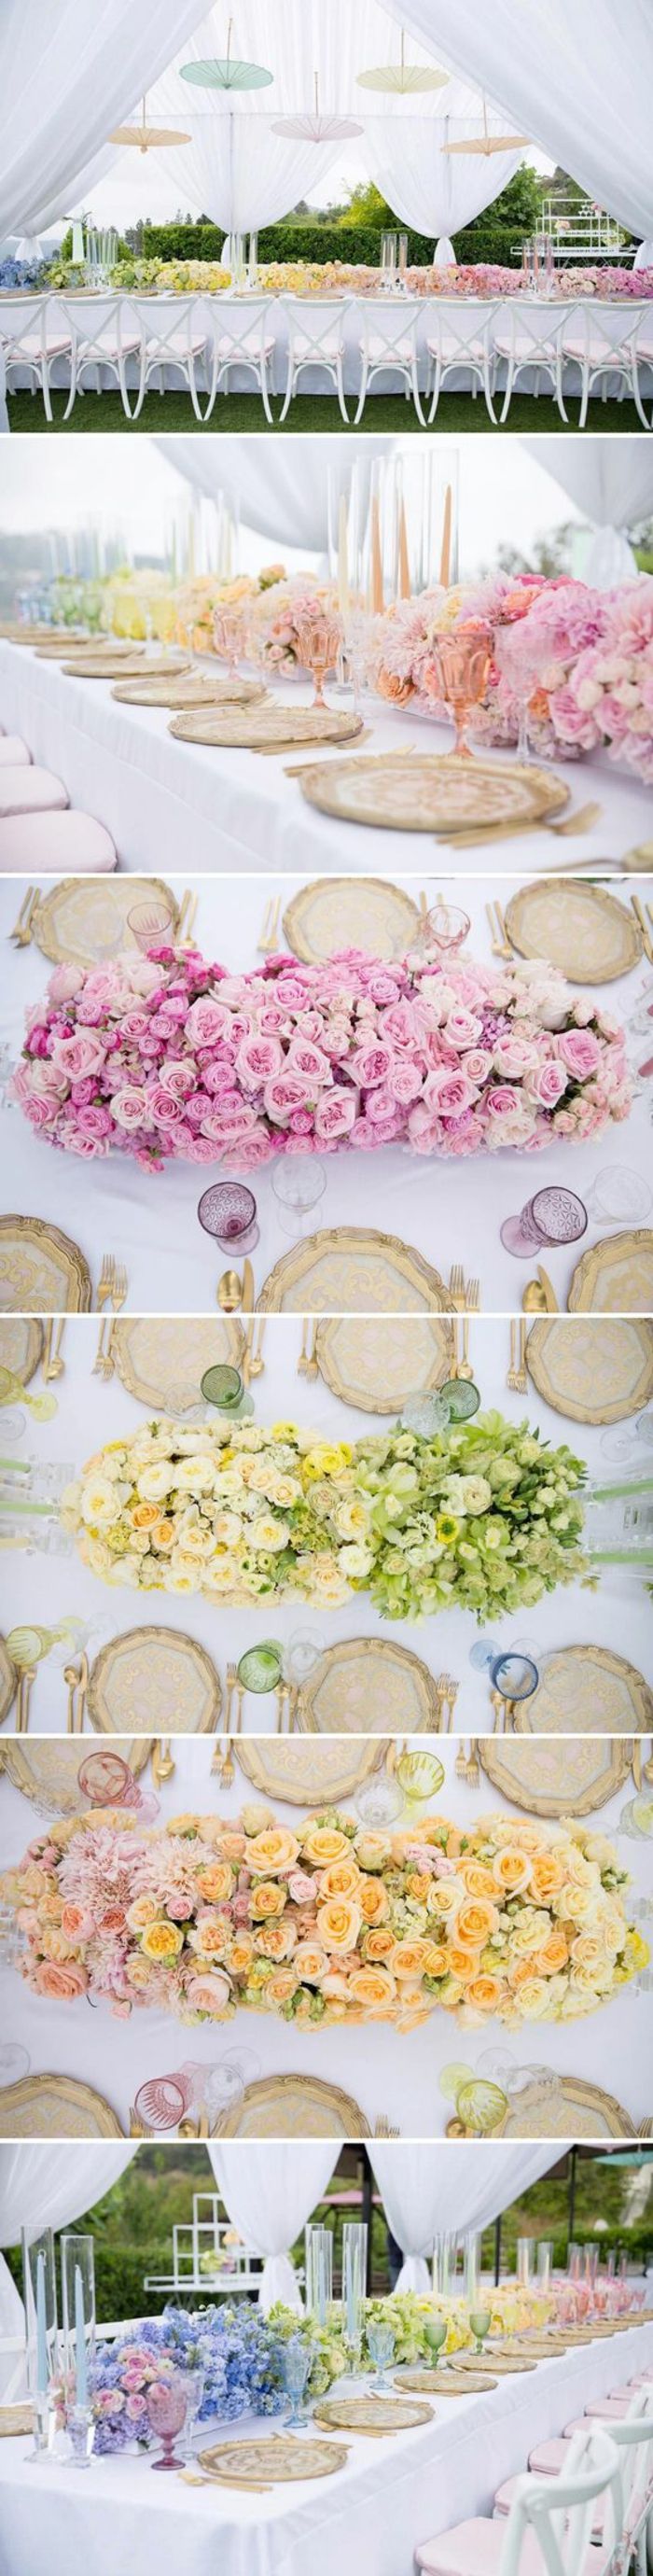 Dekoracijos, vestuvių dekoravimas, ilgi stalai, dekoruoti skirtingų spalvų gėlėmis